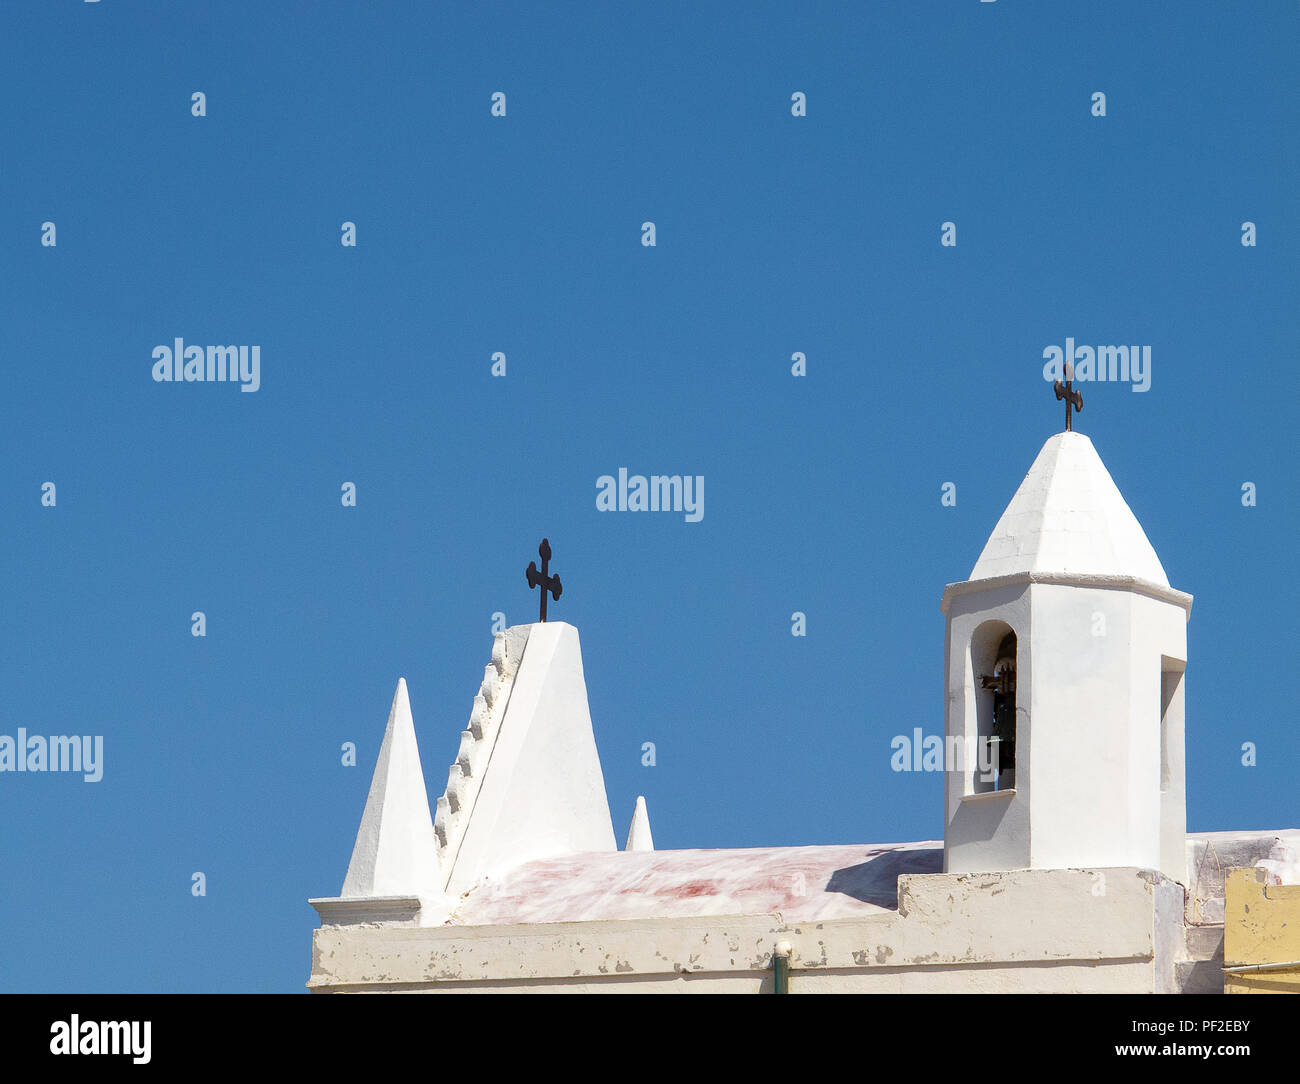 Calabria (Italia): tetto e piccolo campanile di una chiesa bianca, con il blu del cielo senza nuvole sullo sfondo, in una soleggiata giornata estiva Foto Stock